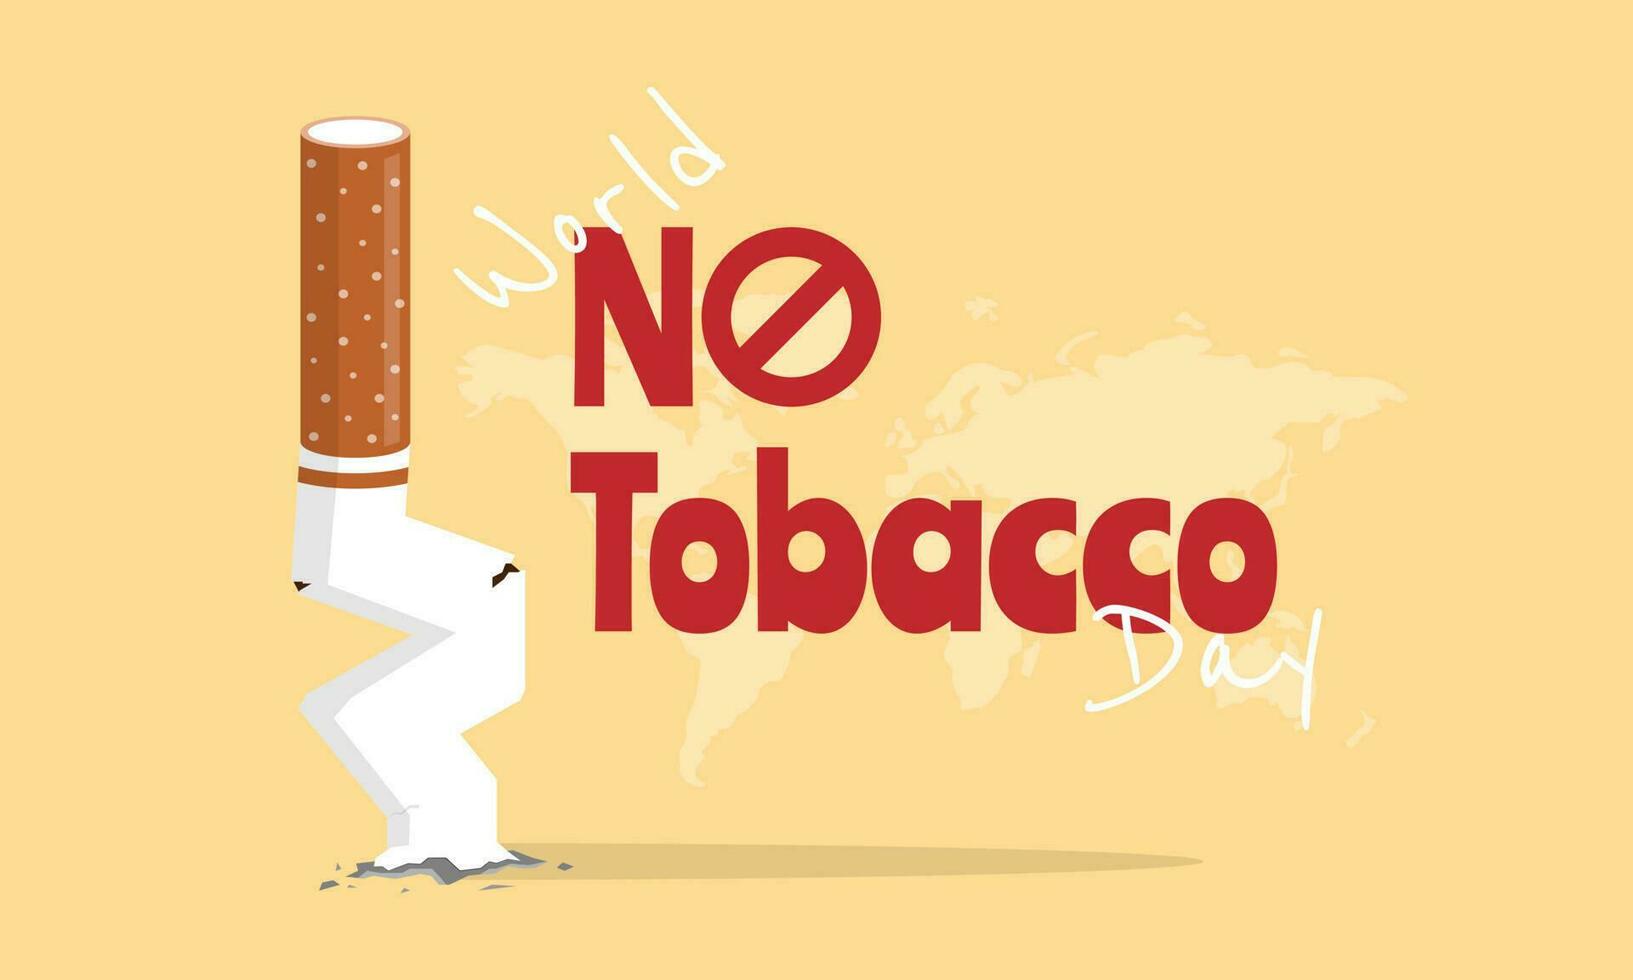 mondo no tabacco giorno con illustrazione di sigaretta mozziconi vettore